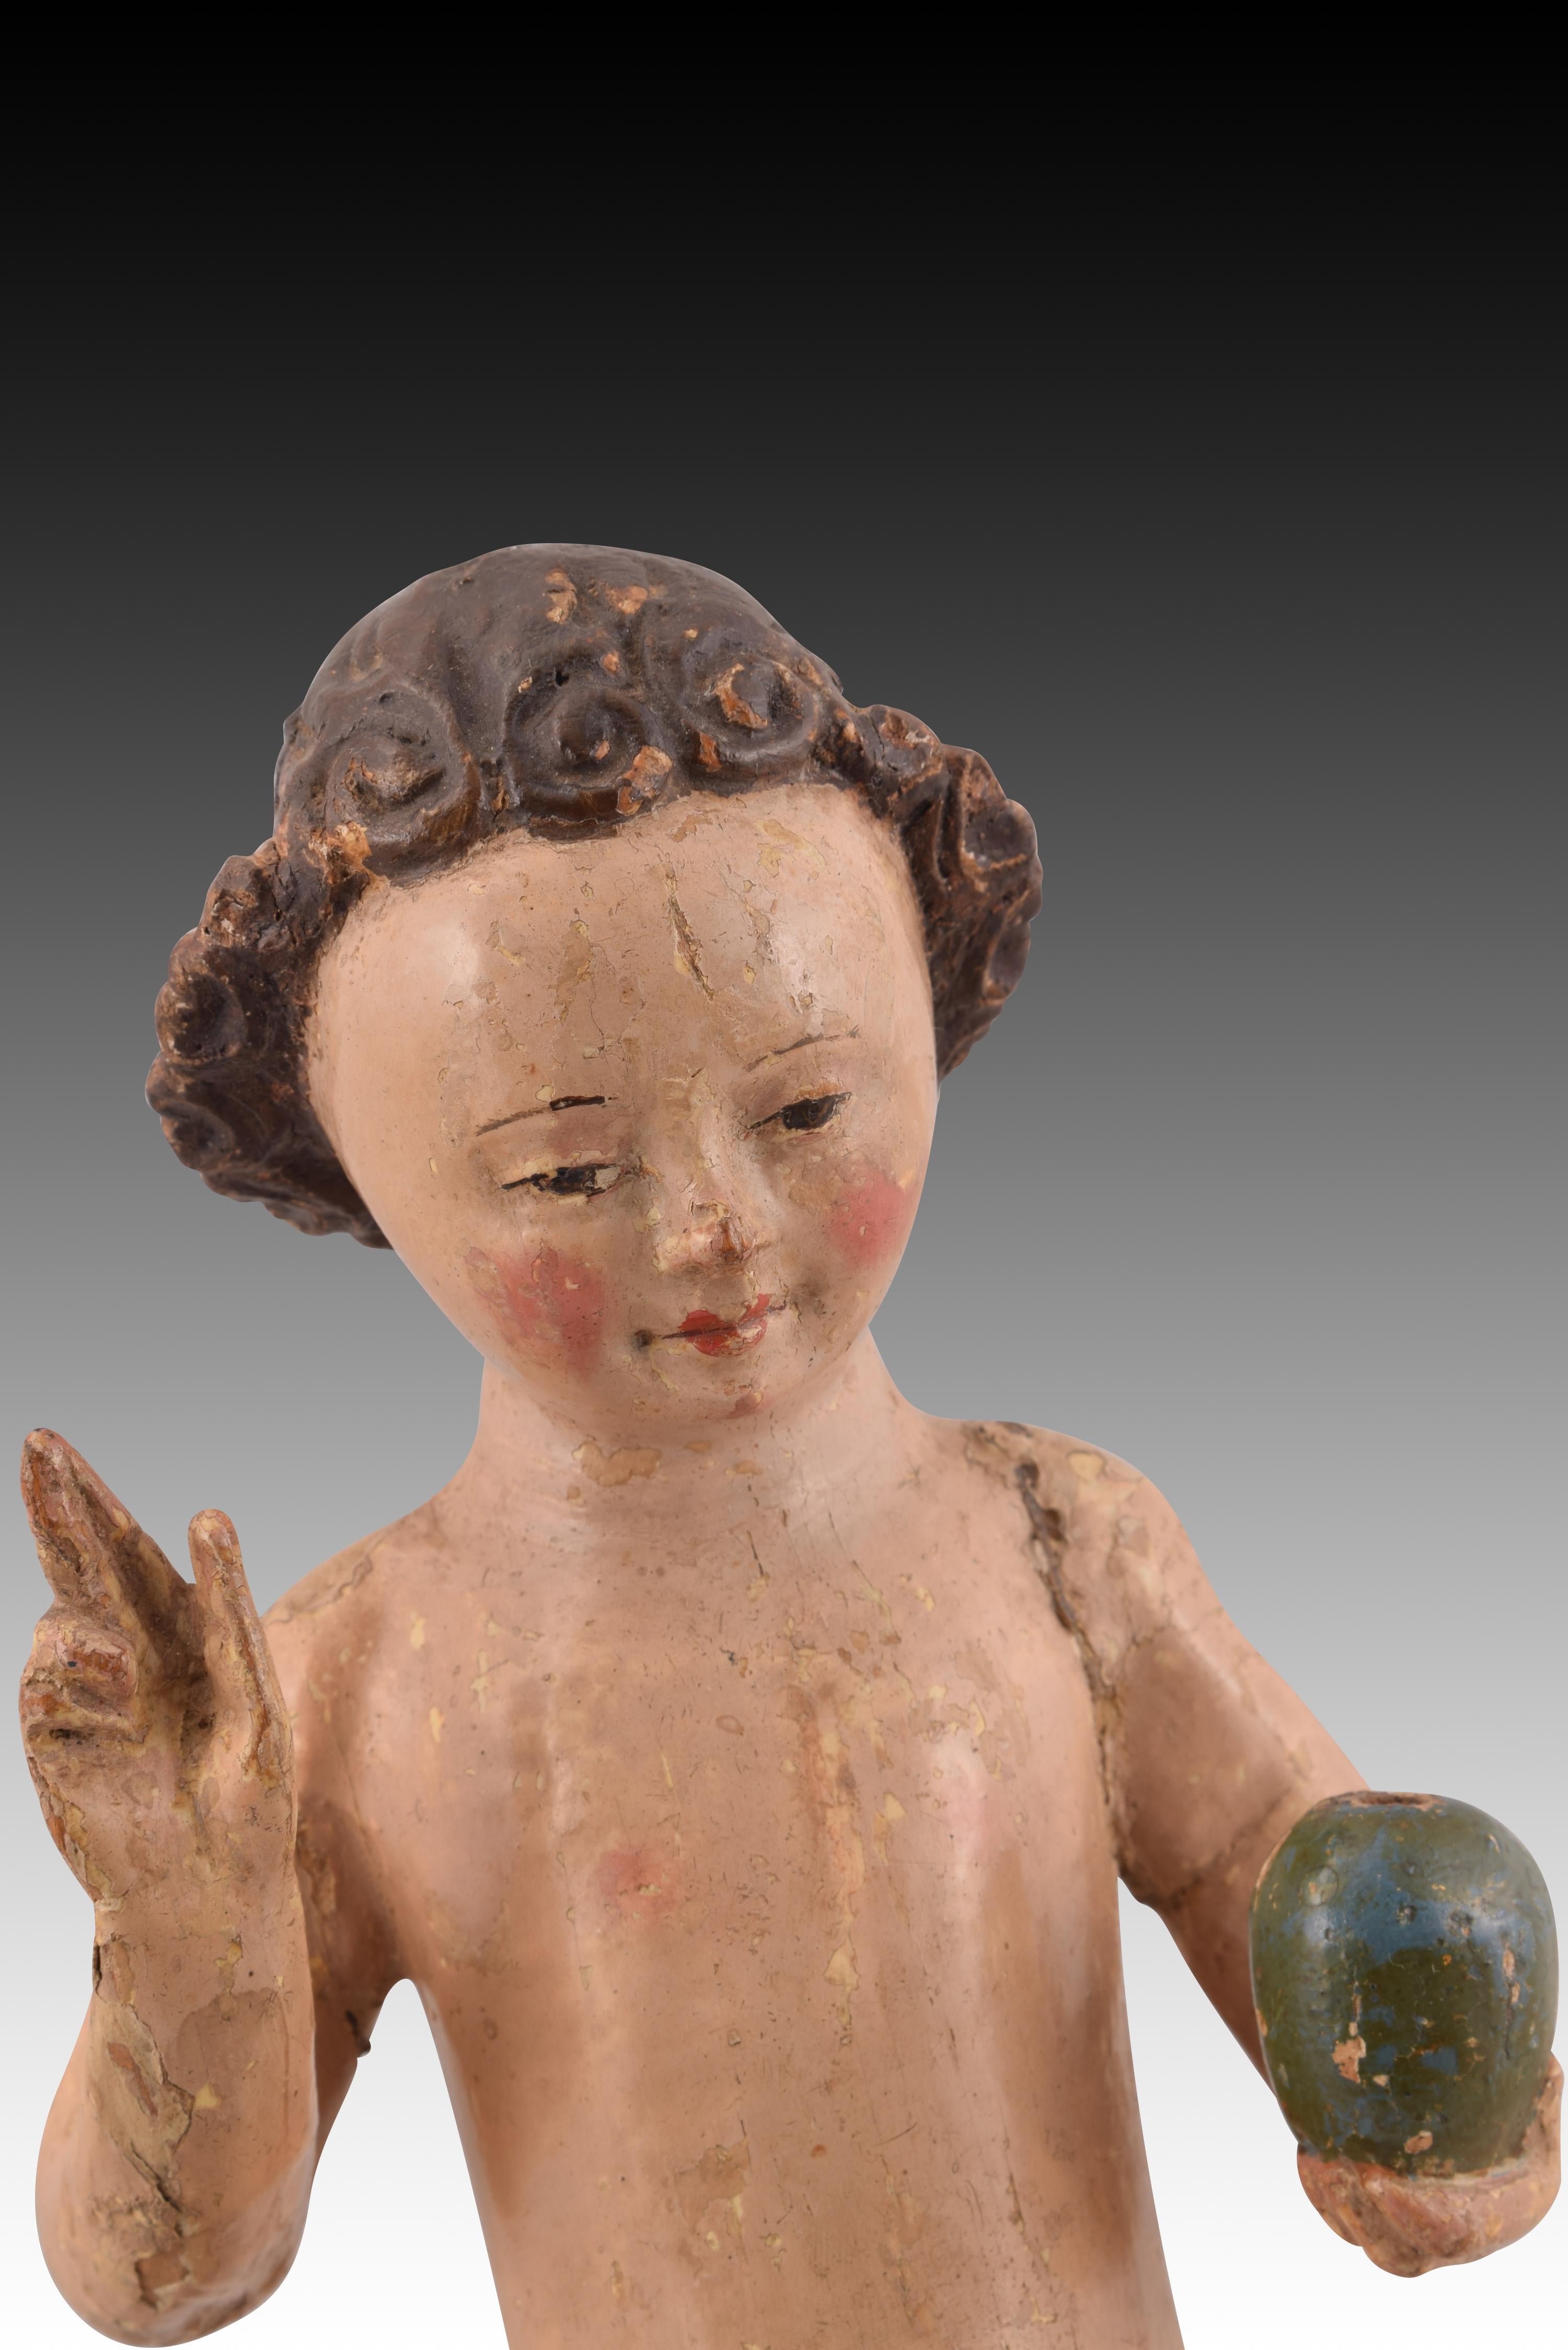 Autre Child & Child. Bois sculpté et polychrome. École flamande, 16e siècle